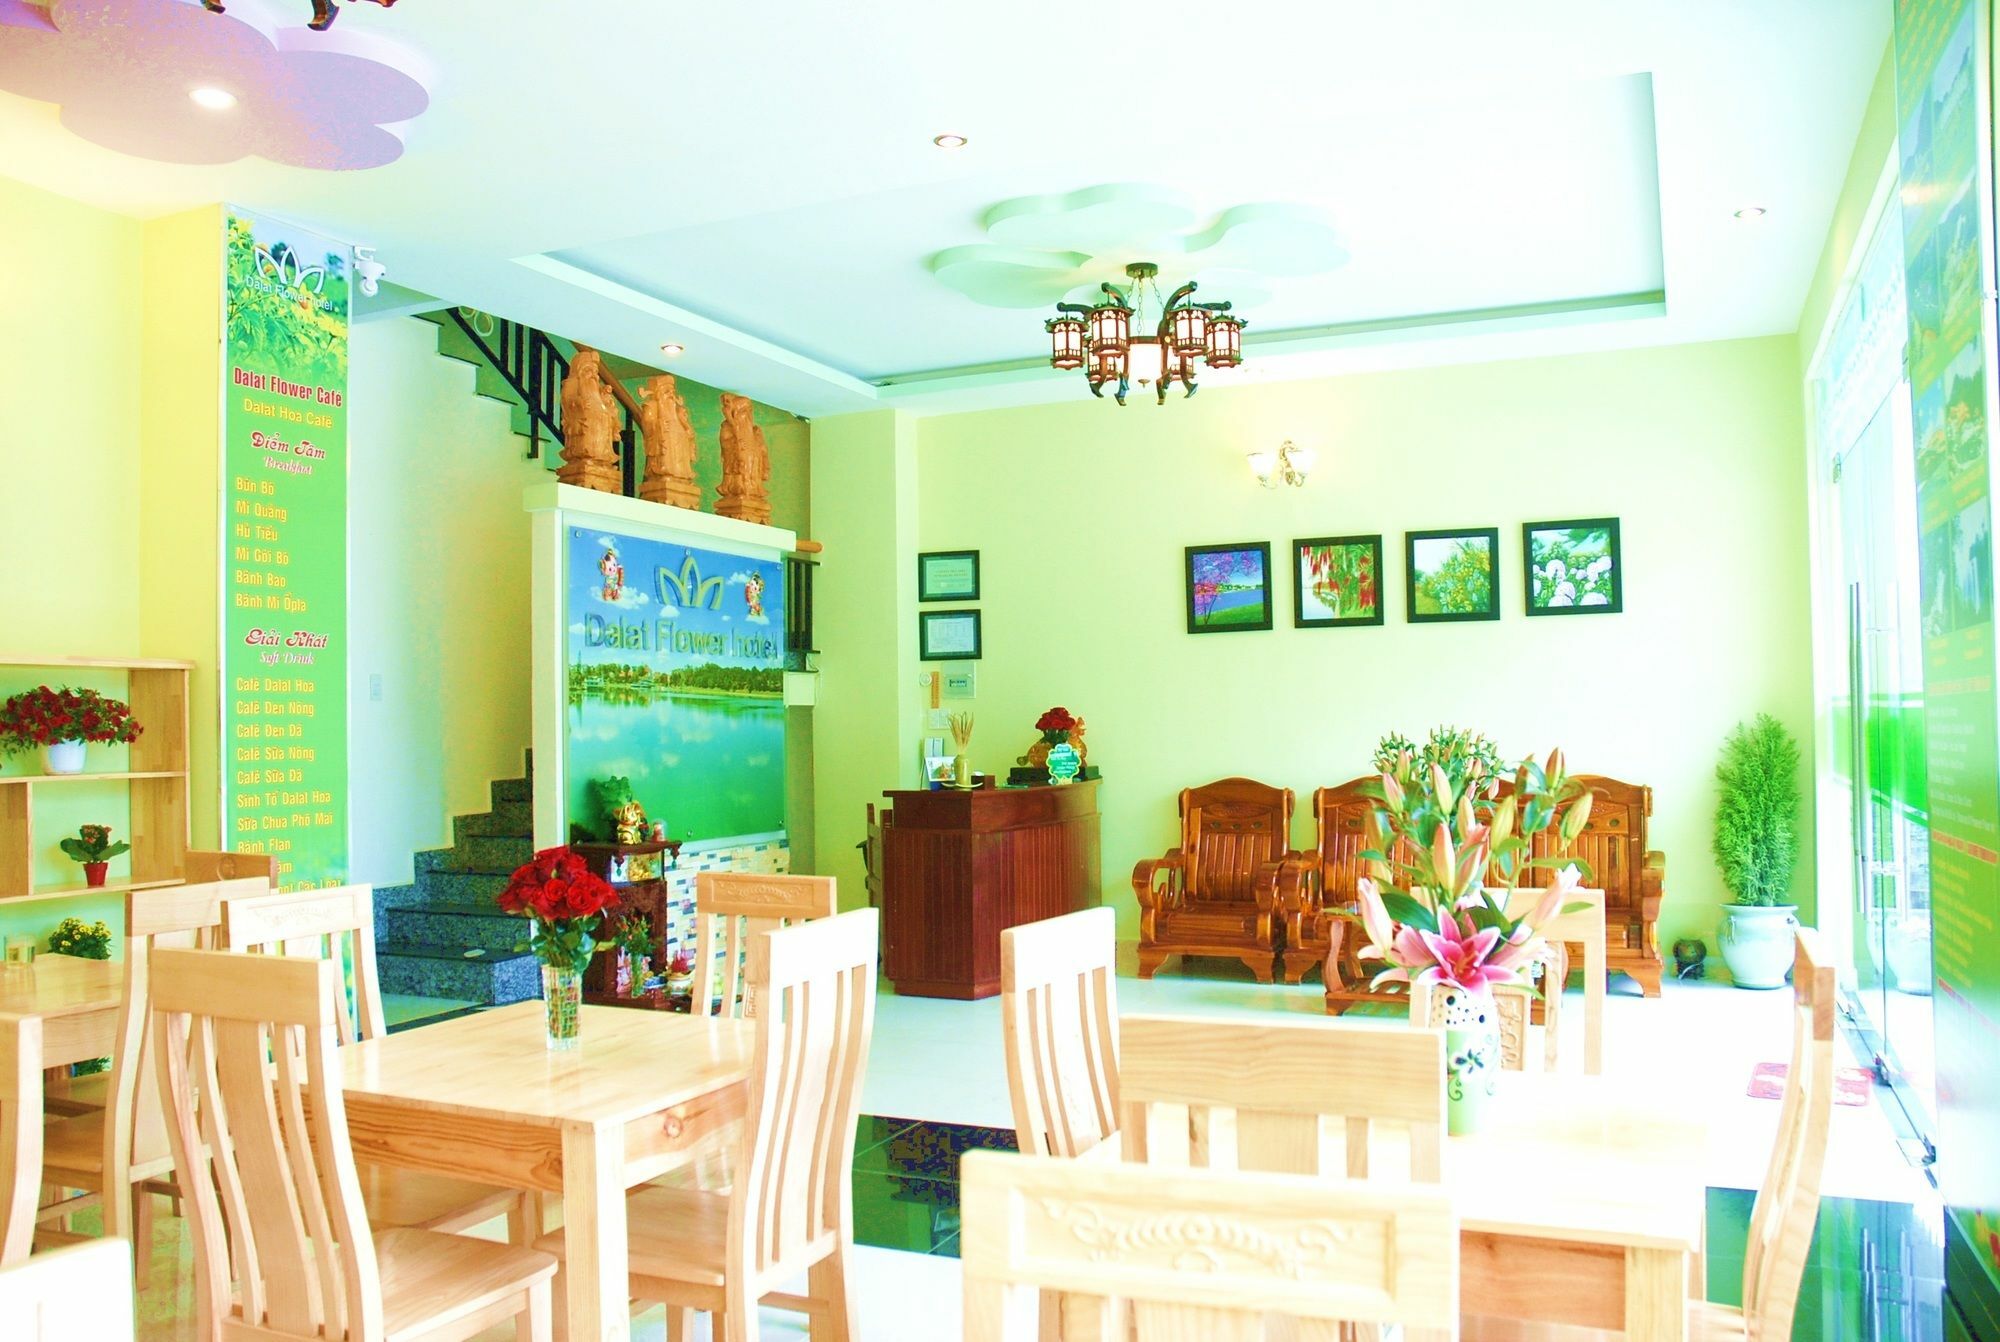 Dalat Flowery Hotel & Coffee Buitenkant foto